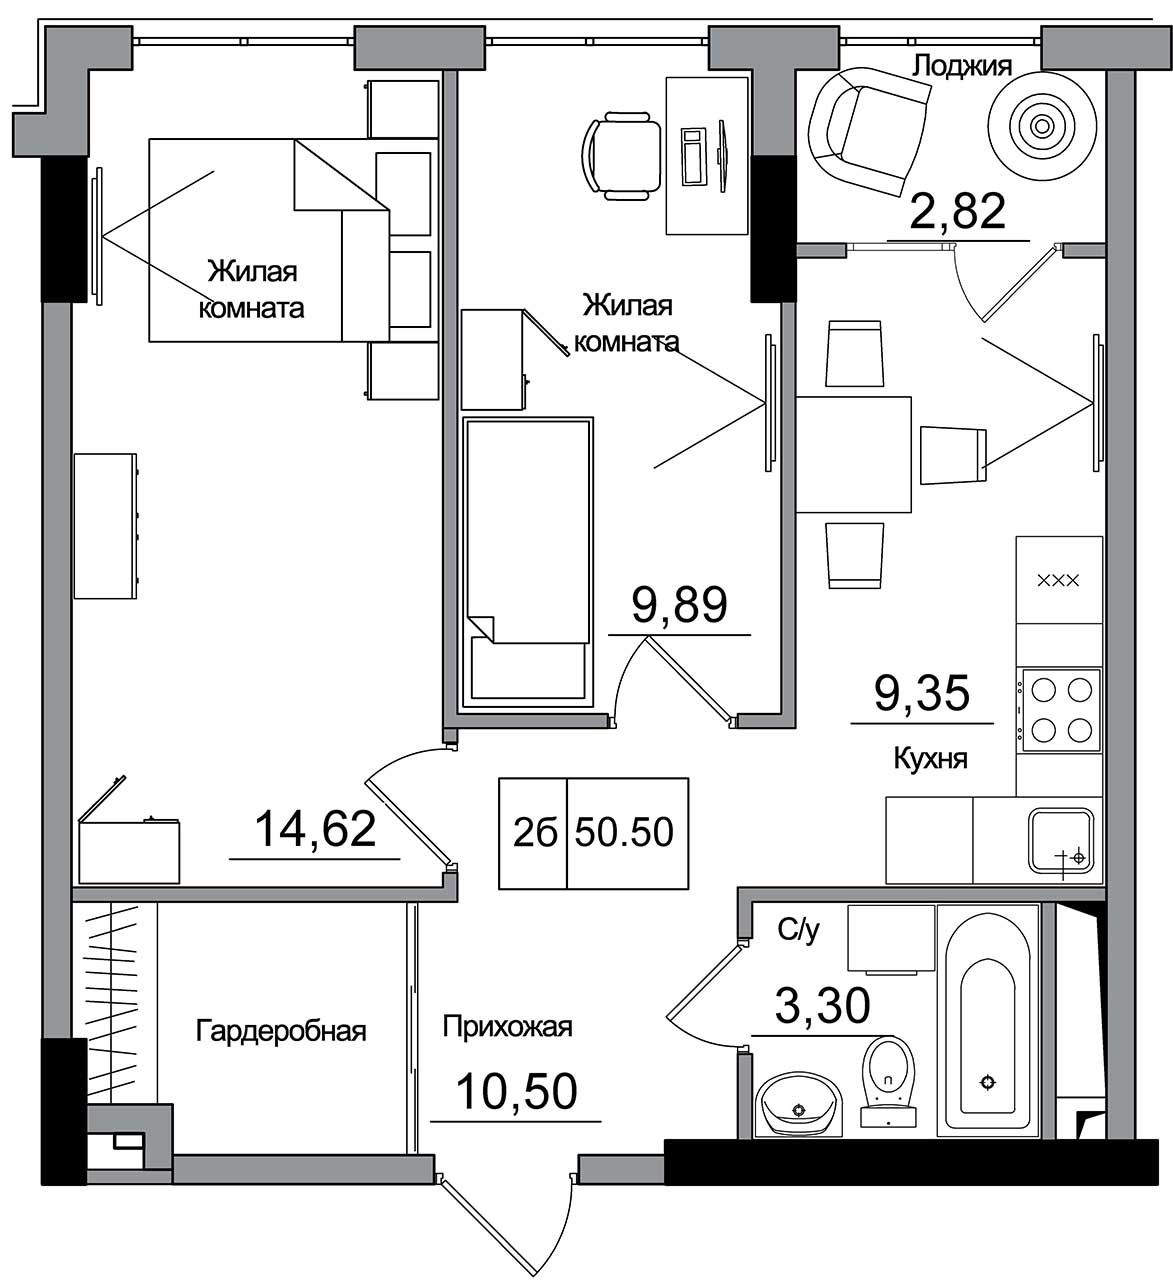 Планировка 2-к квартира площей 50.5м2, AB-16-09/00007.